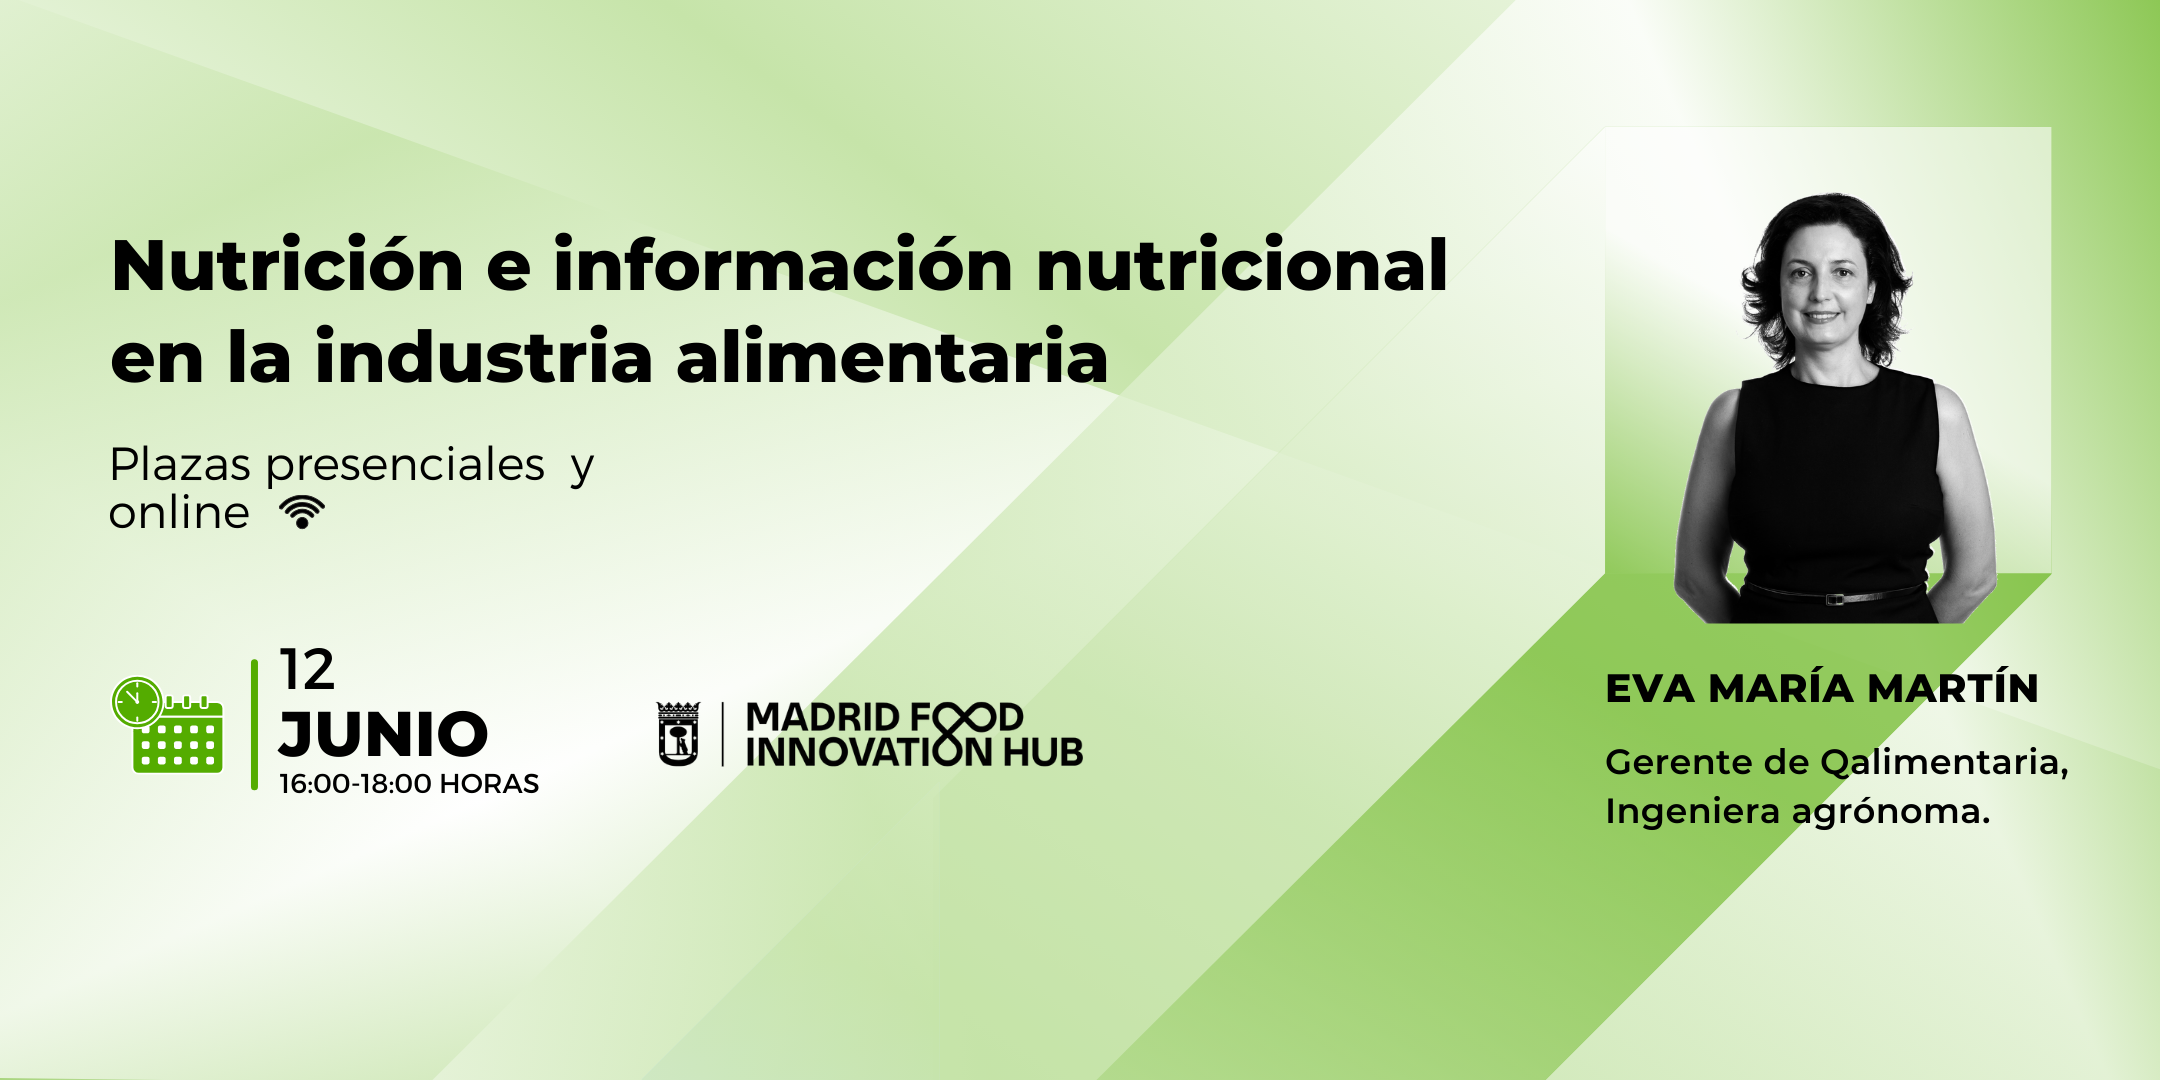 Nutrición e información nutricional en la industria alimentaria